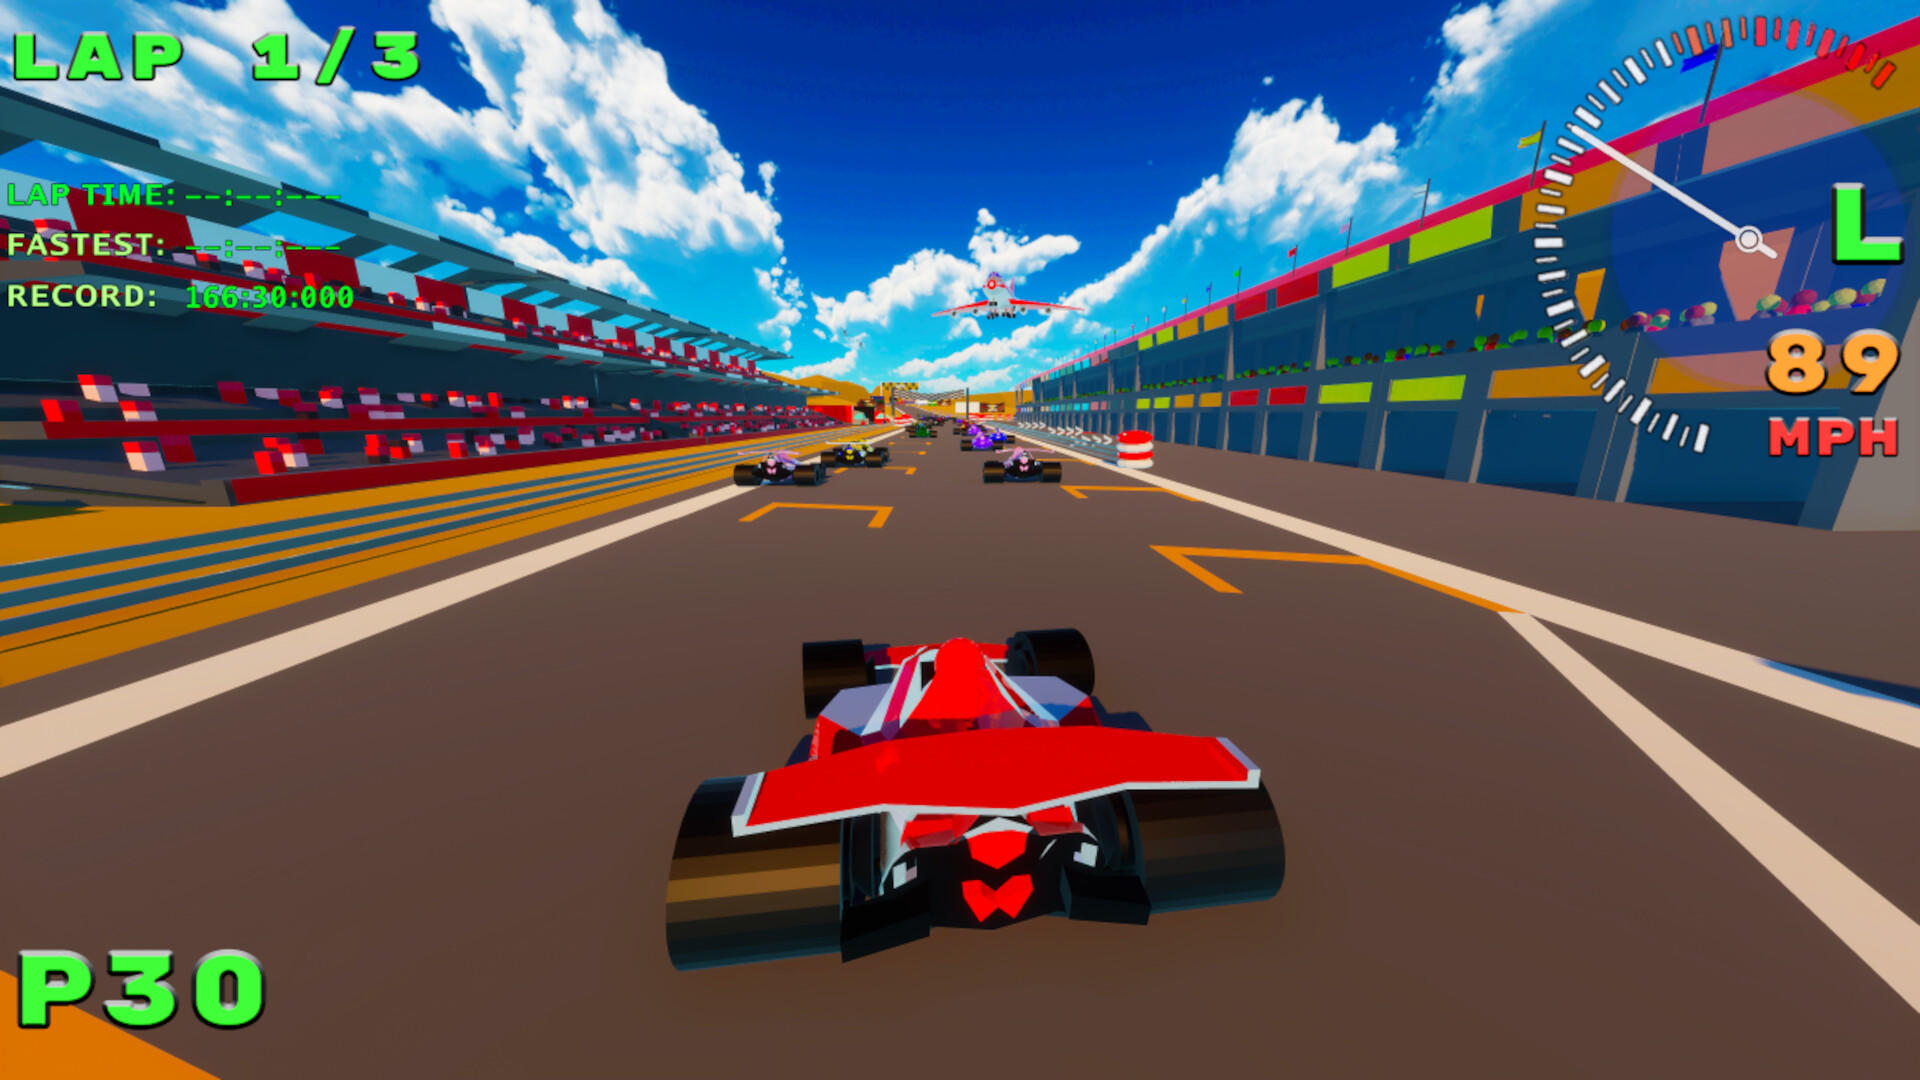 Screenshot 1 of Grand Prix Poligon Super SPGP 